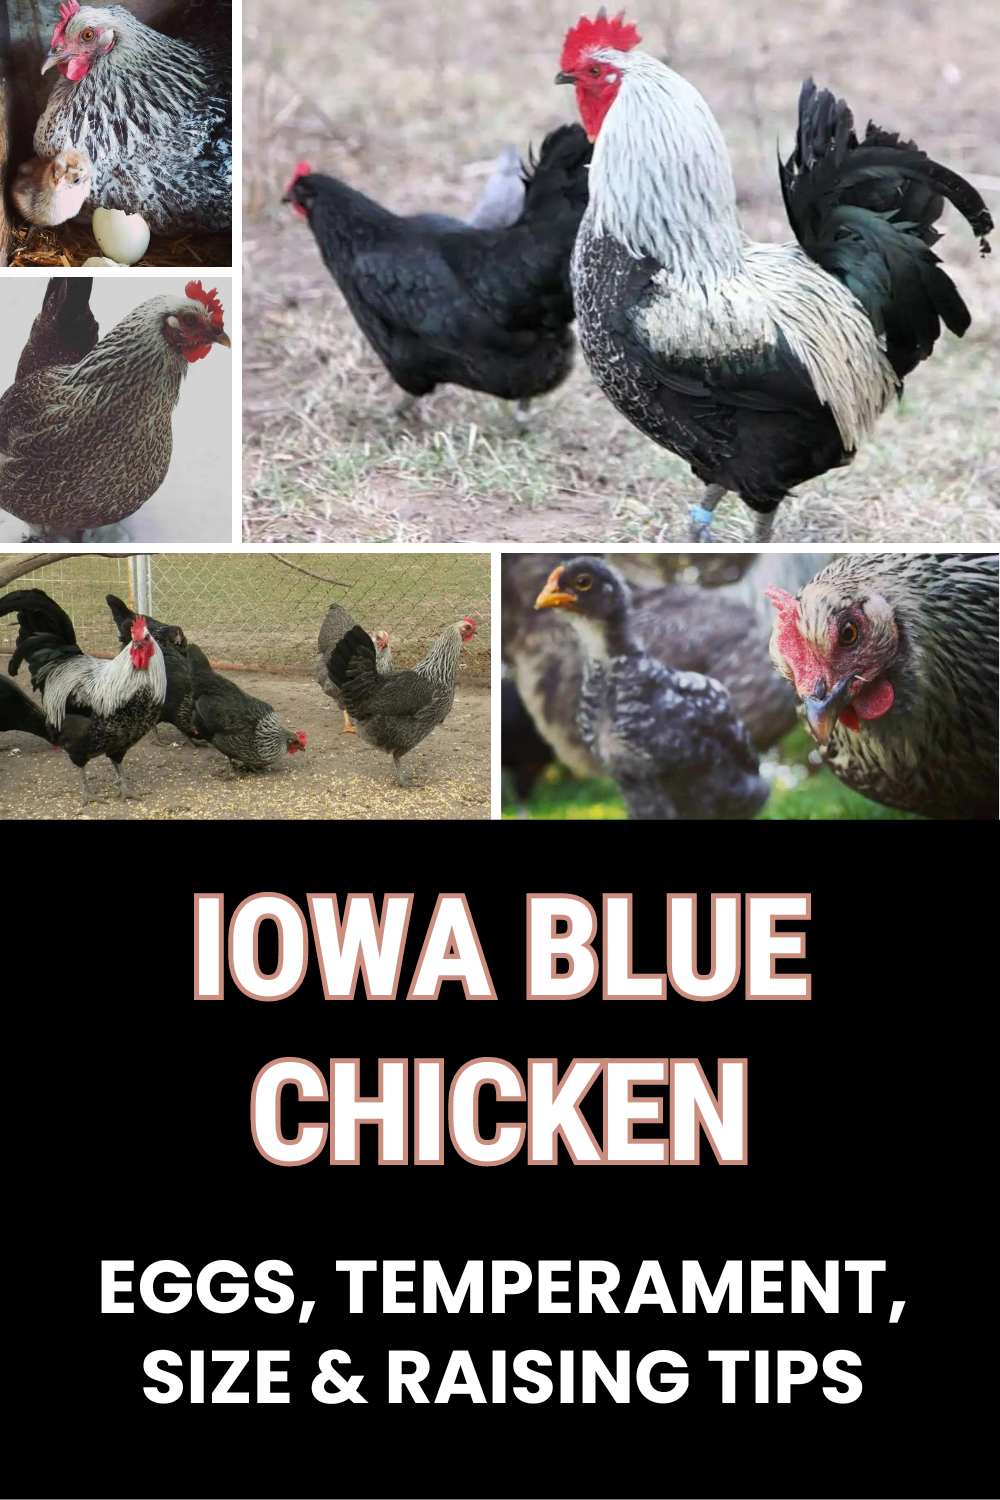 Iowa Blue Chicken guide